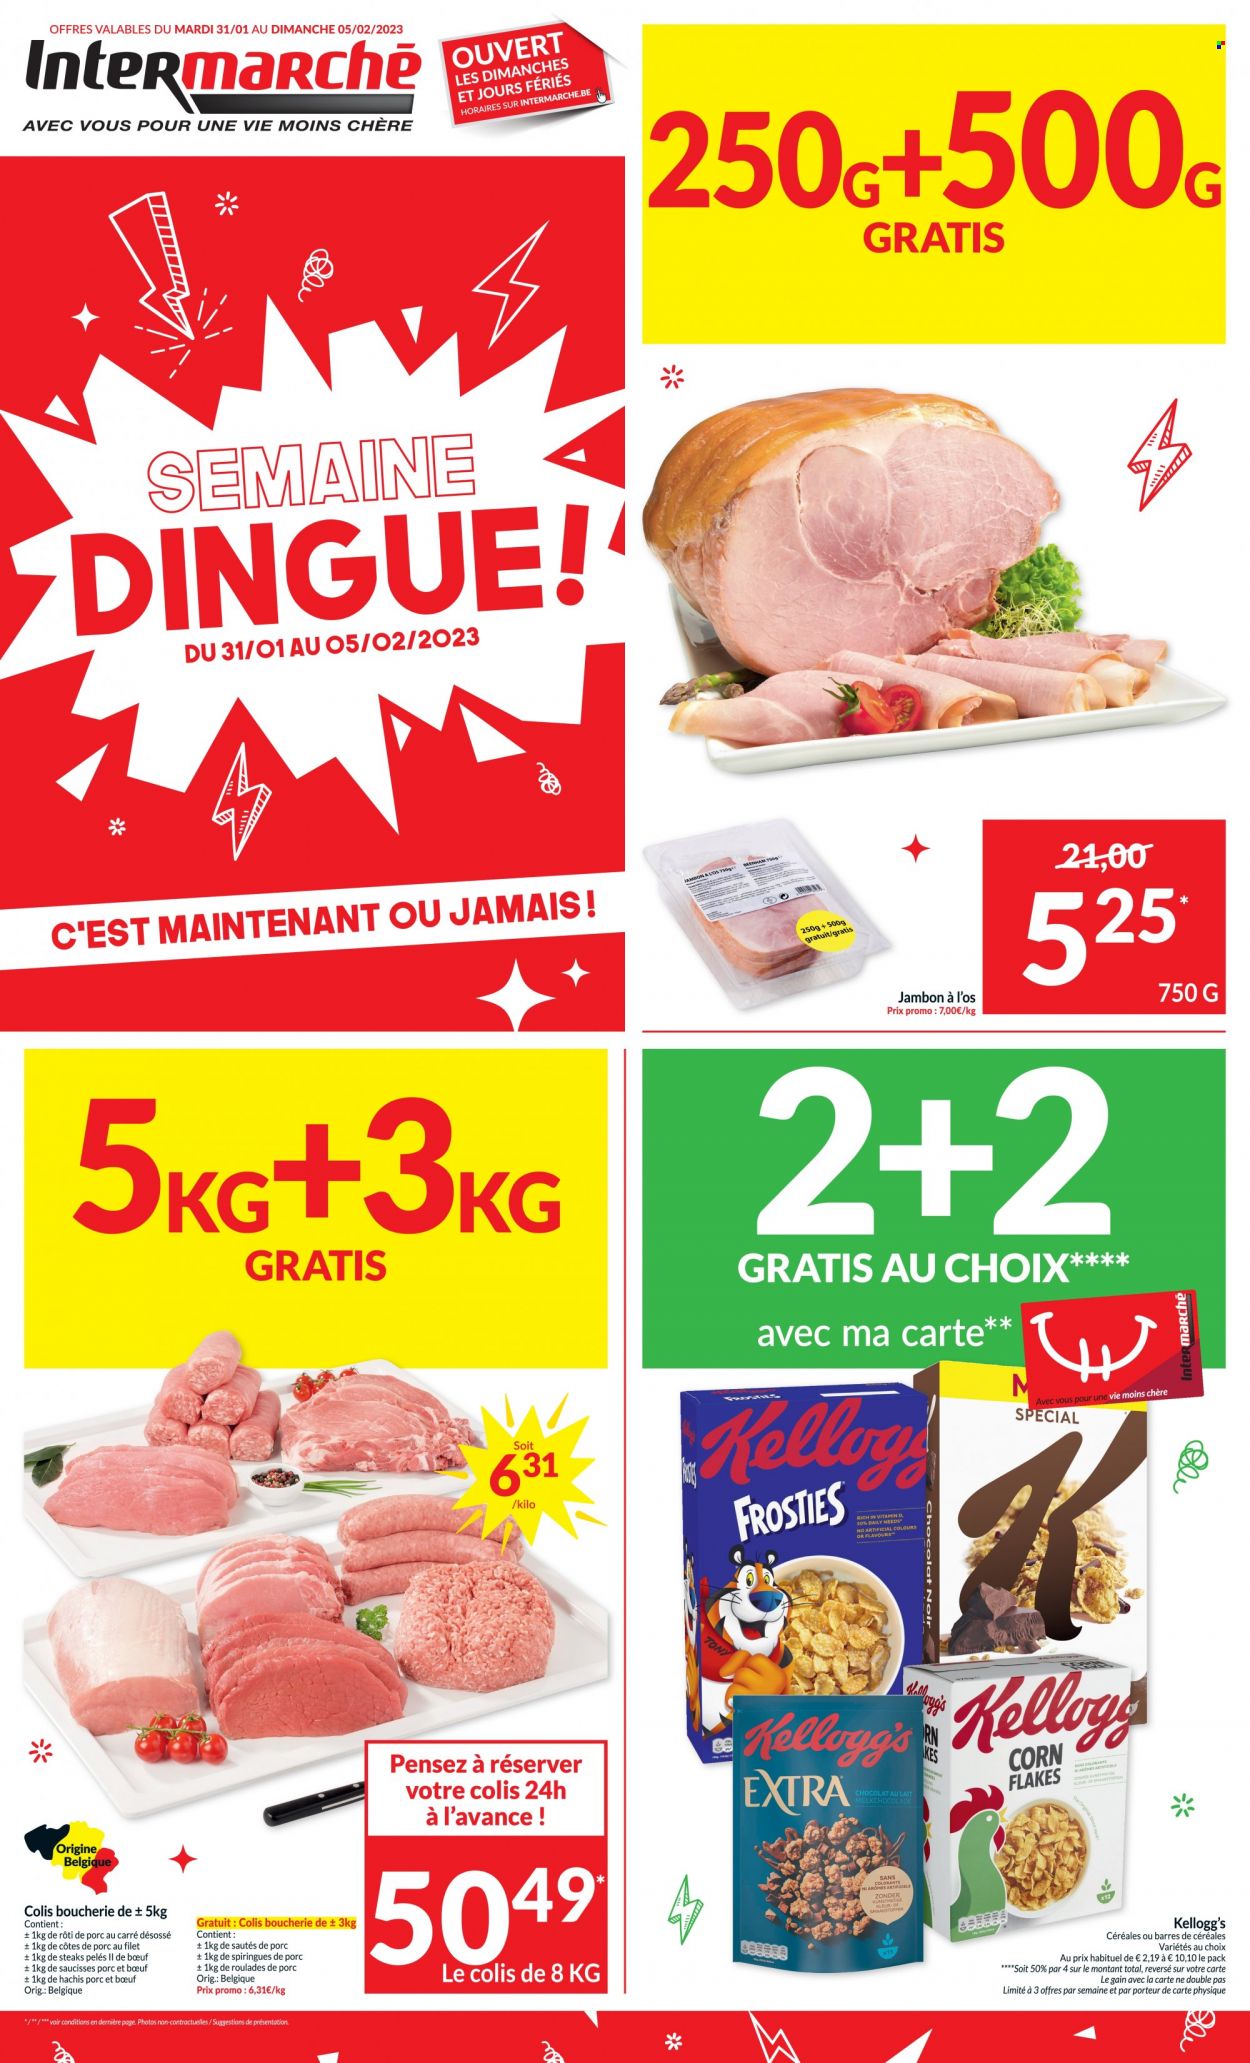 thumbnail - Catalogue Intermarché - 31/01/2023 - 05/02/2023 - Produits soldés - steak, côtes de porc, rôti de porc, viande de porc, jambon, saucisse, Kellogg's, chocolat au lait. Page 1.